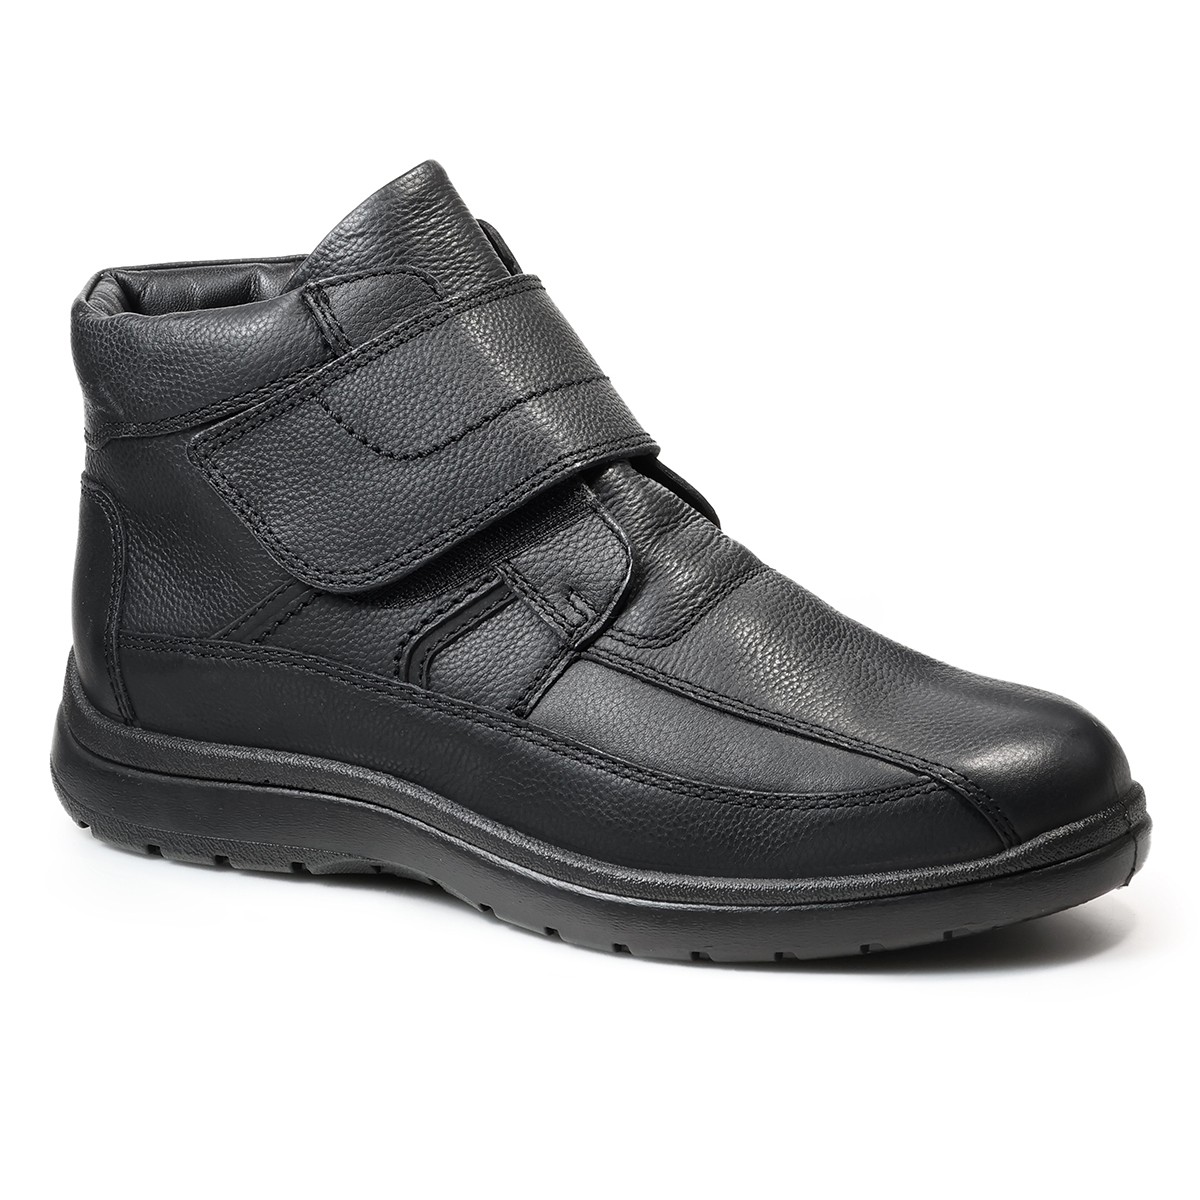 Зимние мужские ботинки Atlanta, Jomos, черные